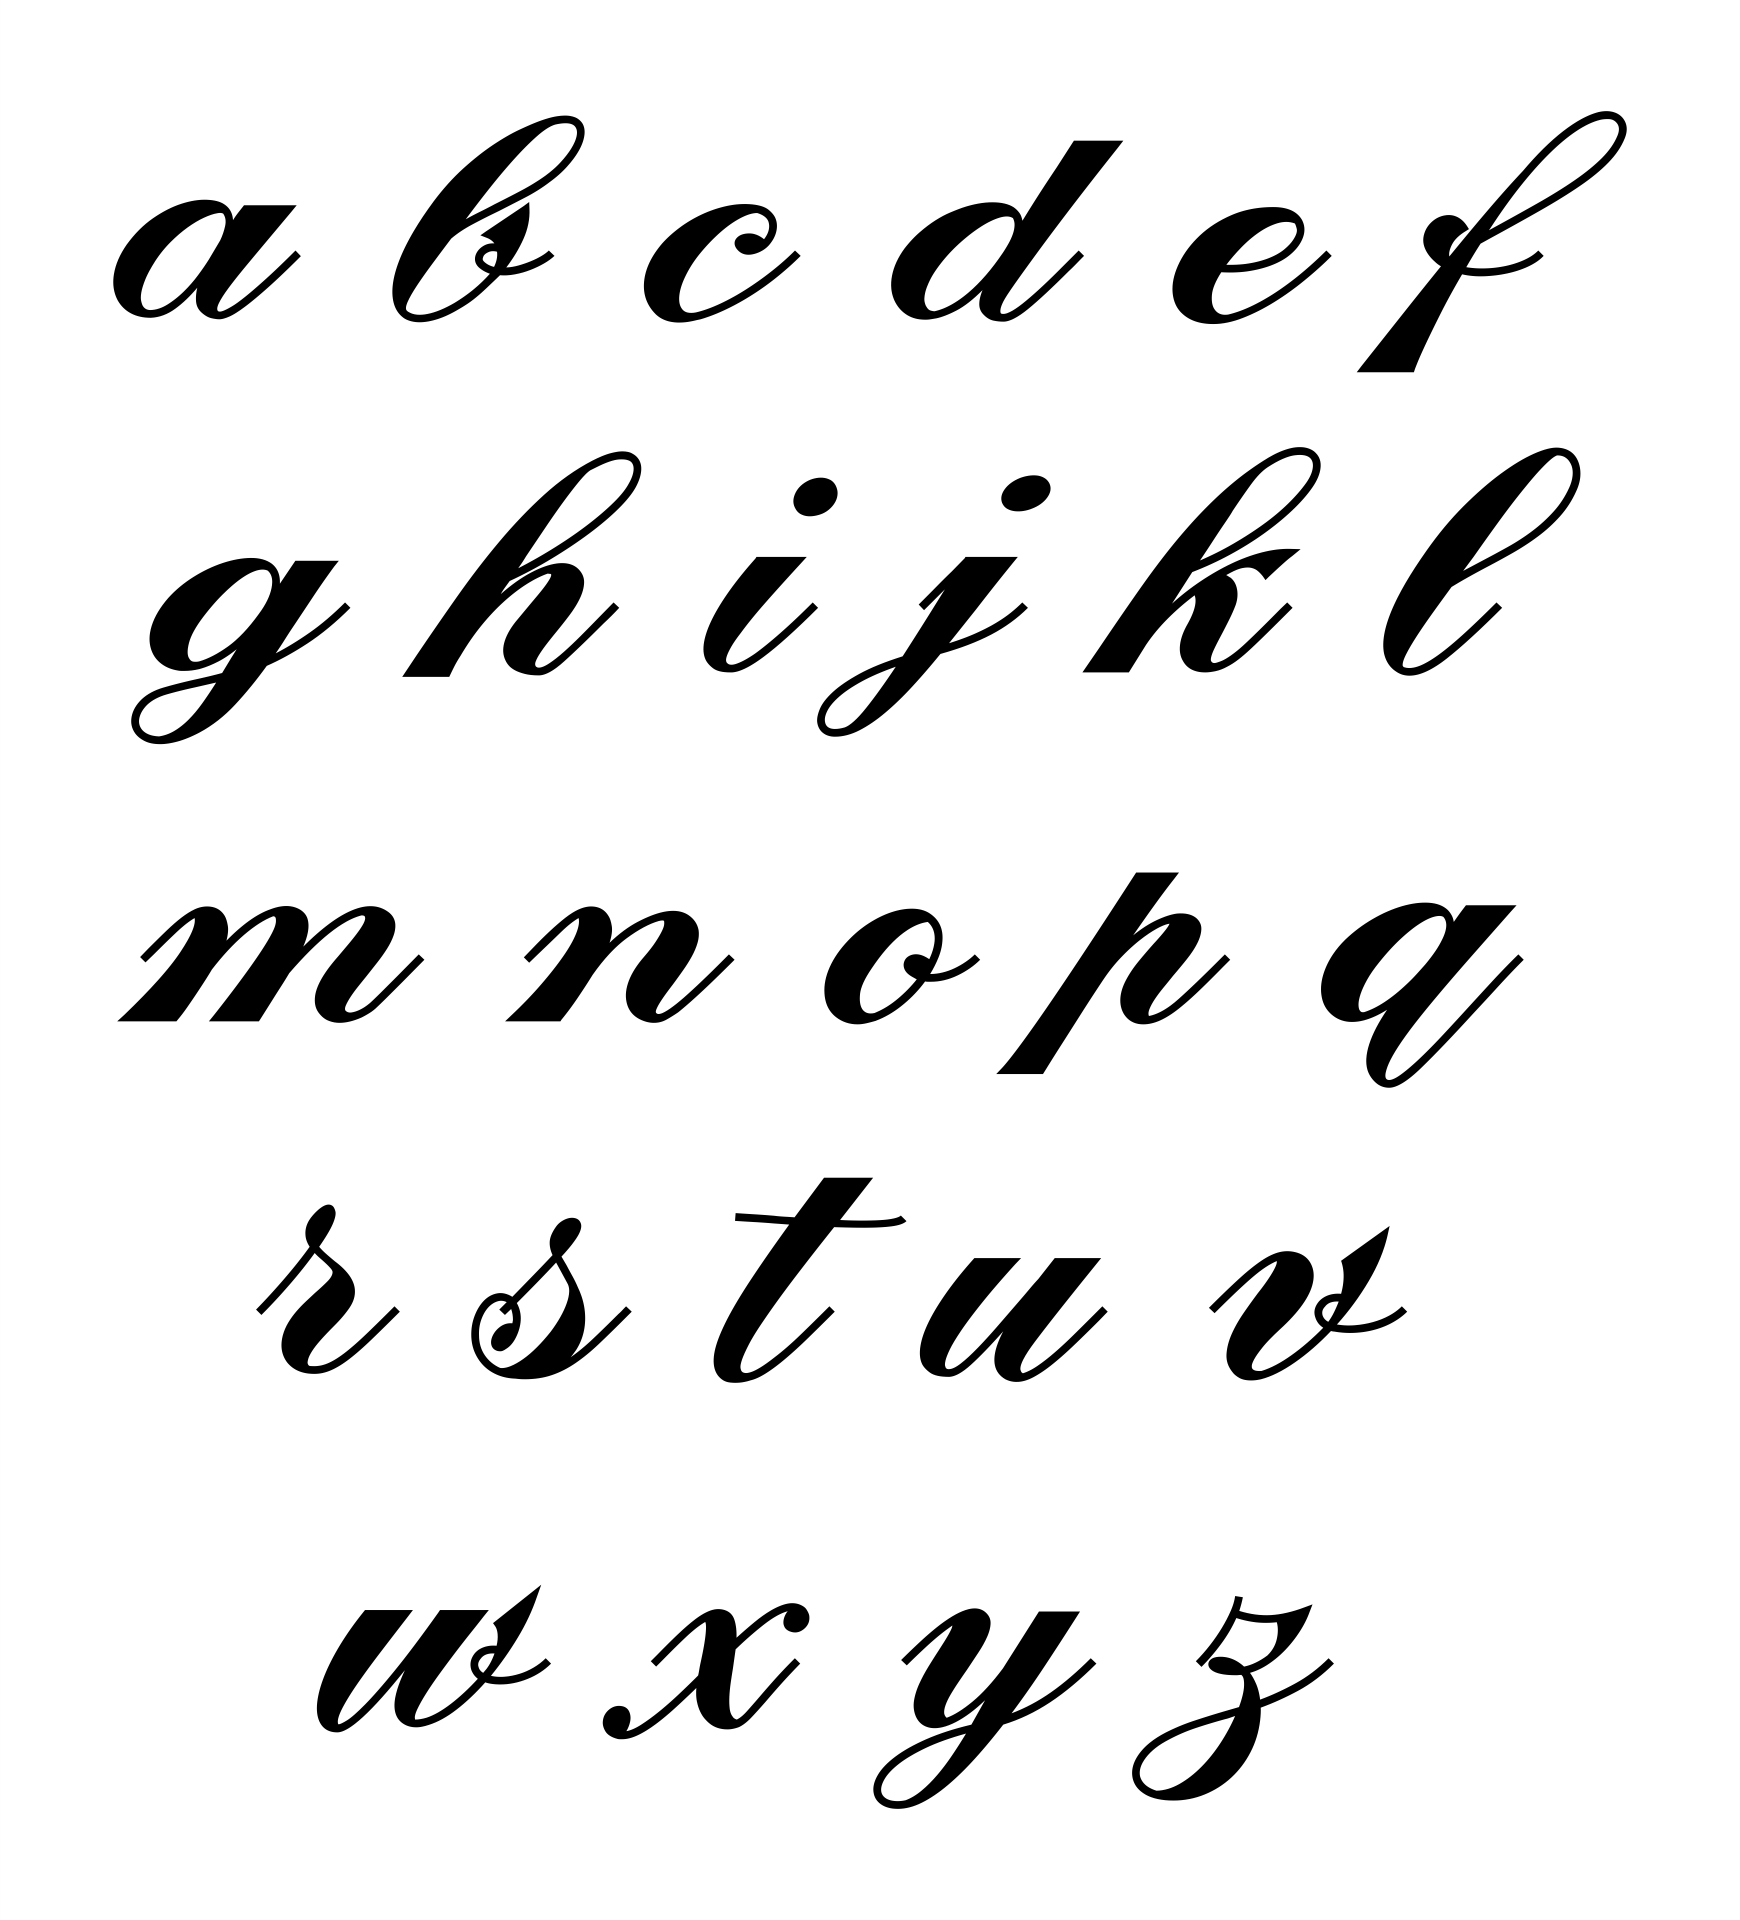 cursive letters